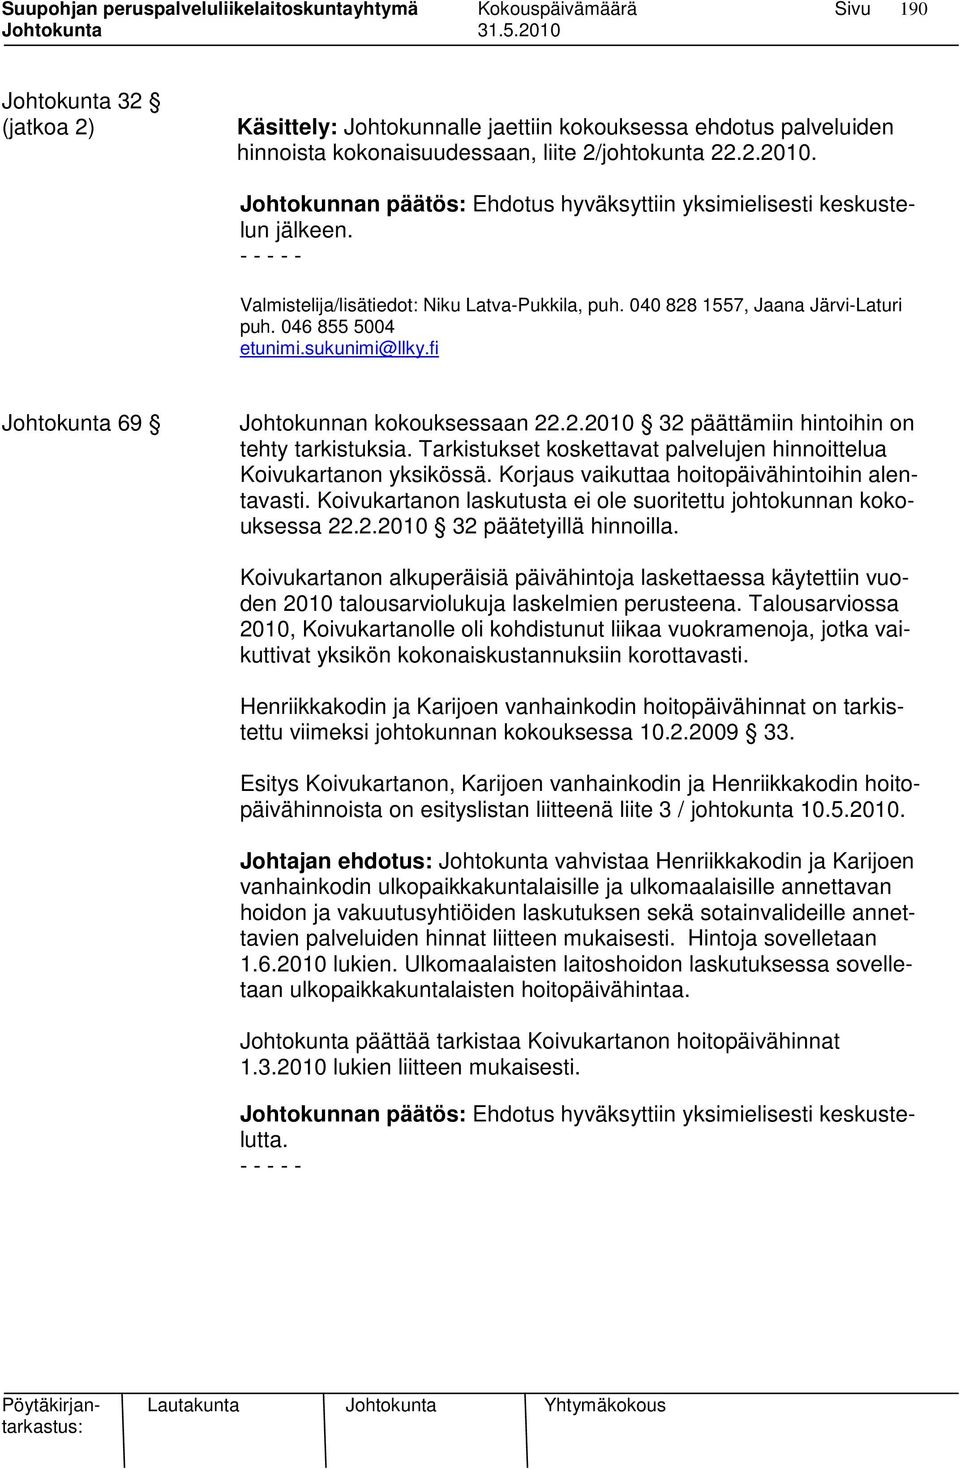 sukunimi@llky.fi Johtokunta 69 Johtokunnan kokouksessaan 22.2.2010 32 päättämiin hintoihin on tehty tarkistuksia. Tarkistukset koskettavat palvelujen hinnoittelua Koivukartanon yksikössä.